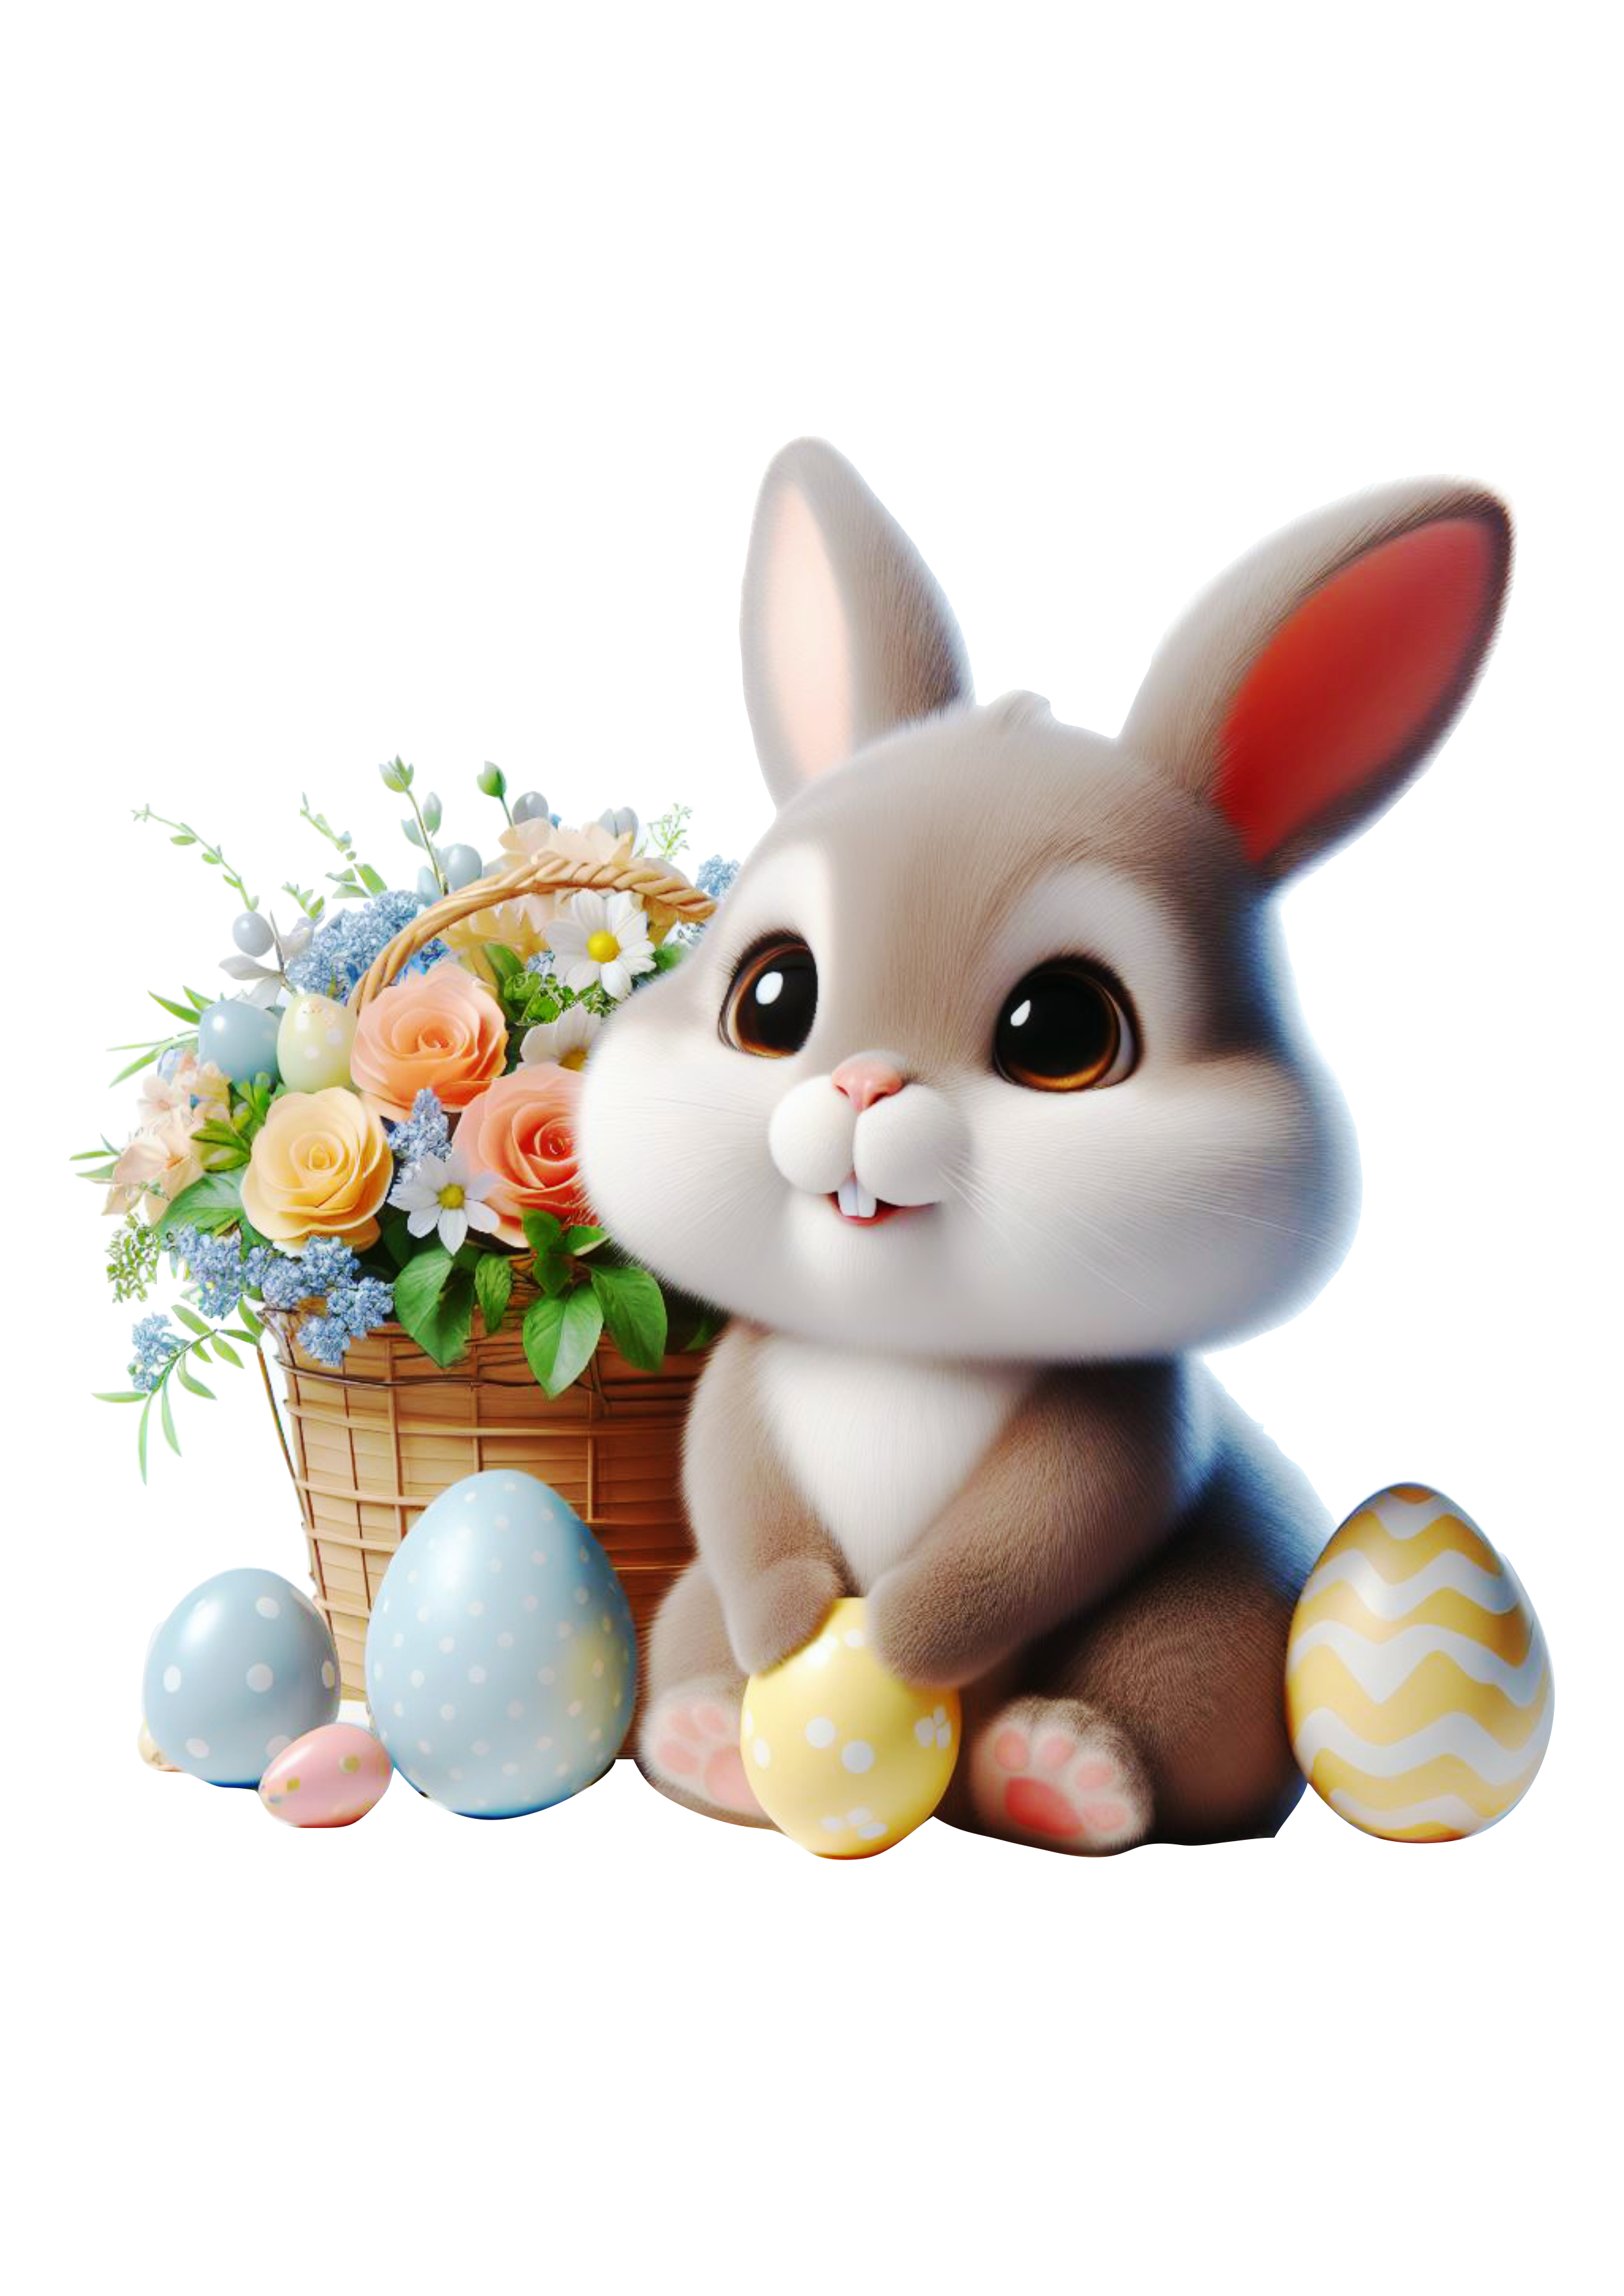 Imagens de páscoa coelhinho fofinho cute decoração ovos de chocolate png